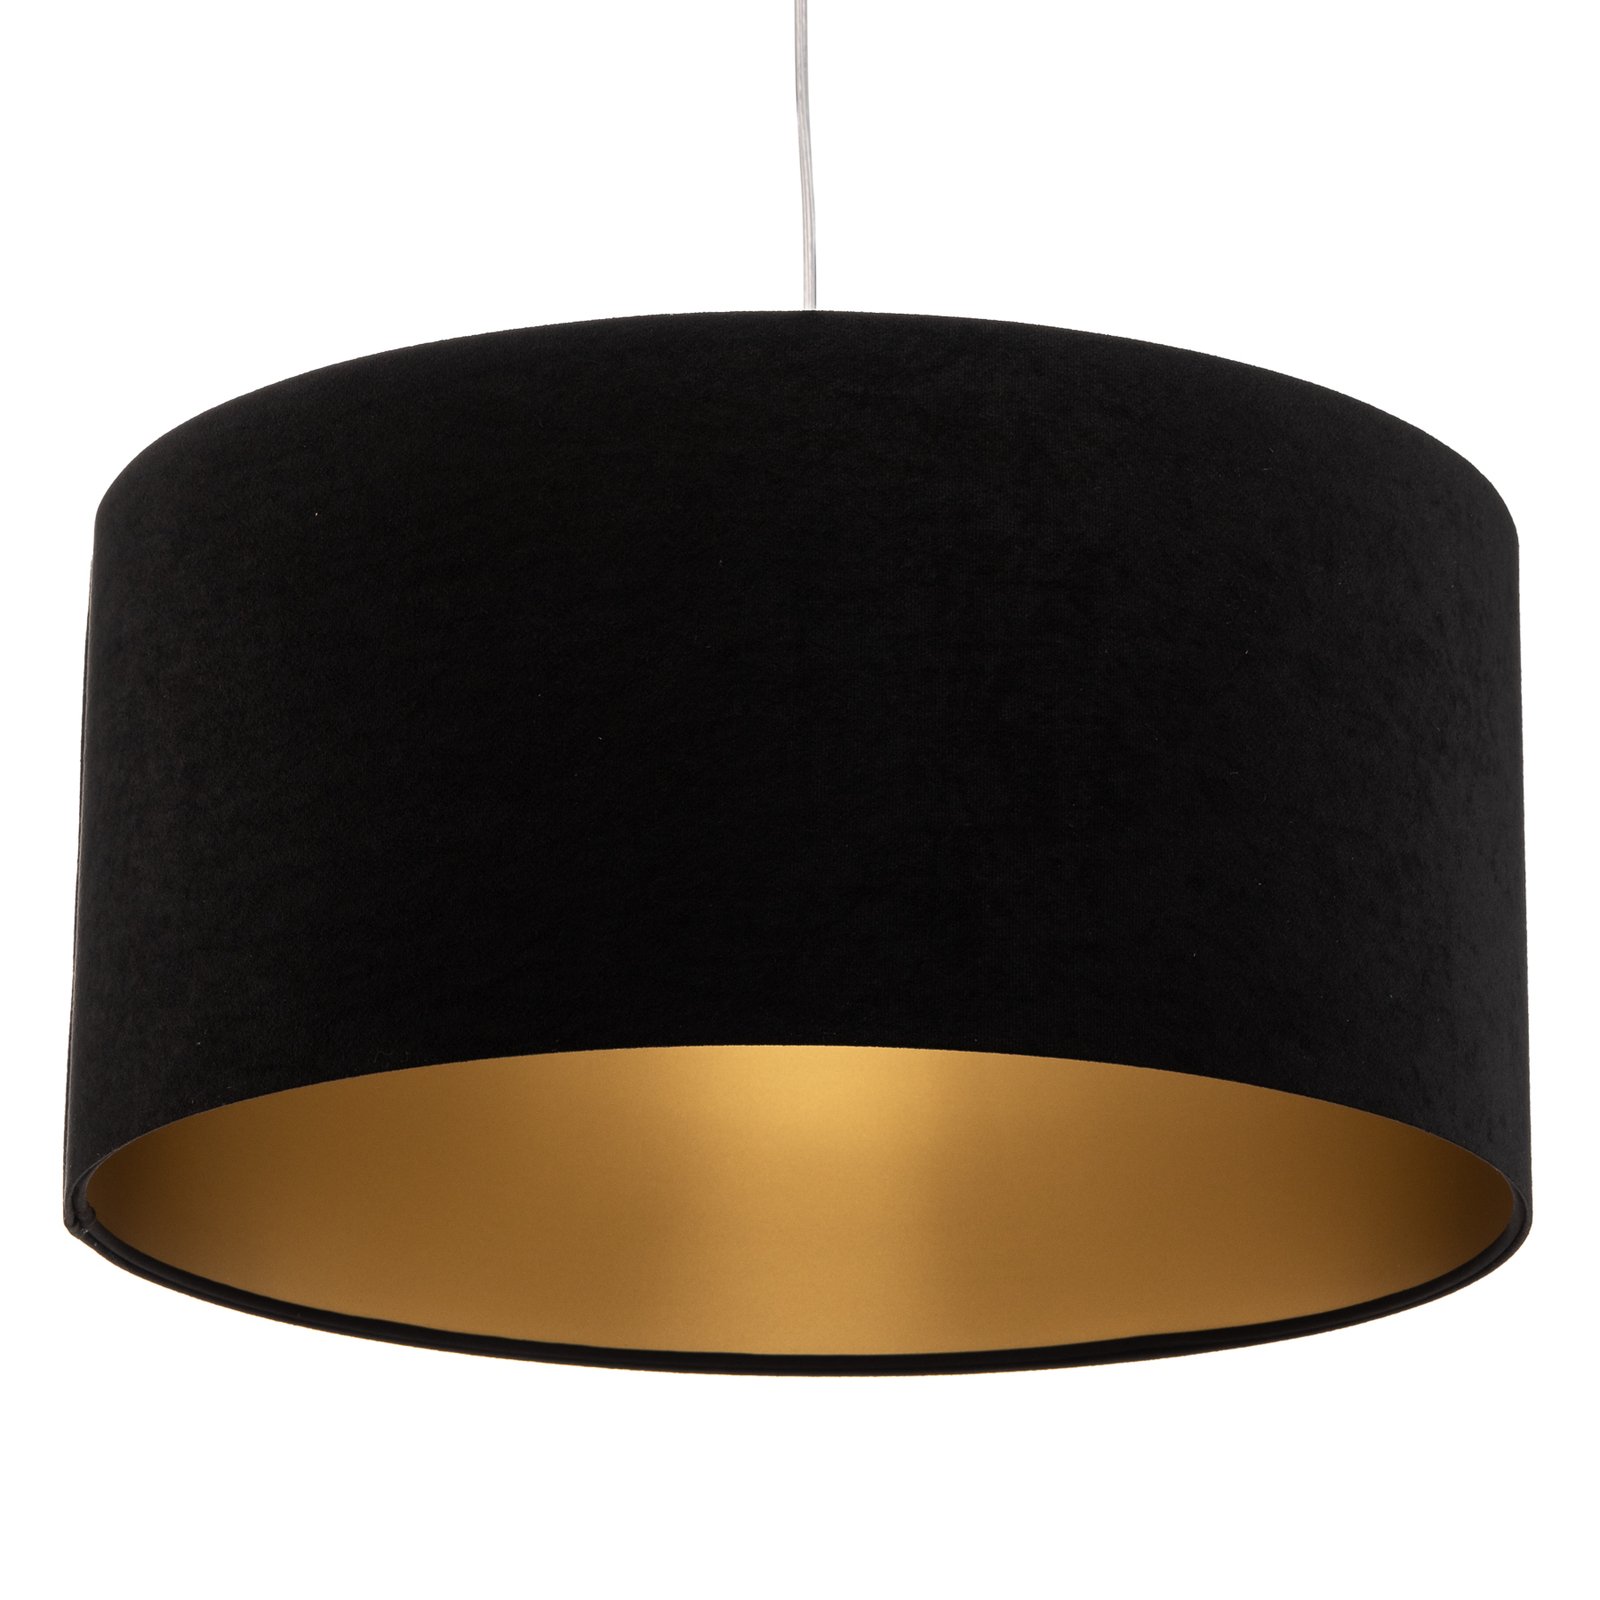 Salina hanglamp, zwart/goud, Ø 50cm